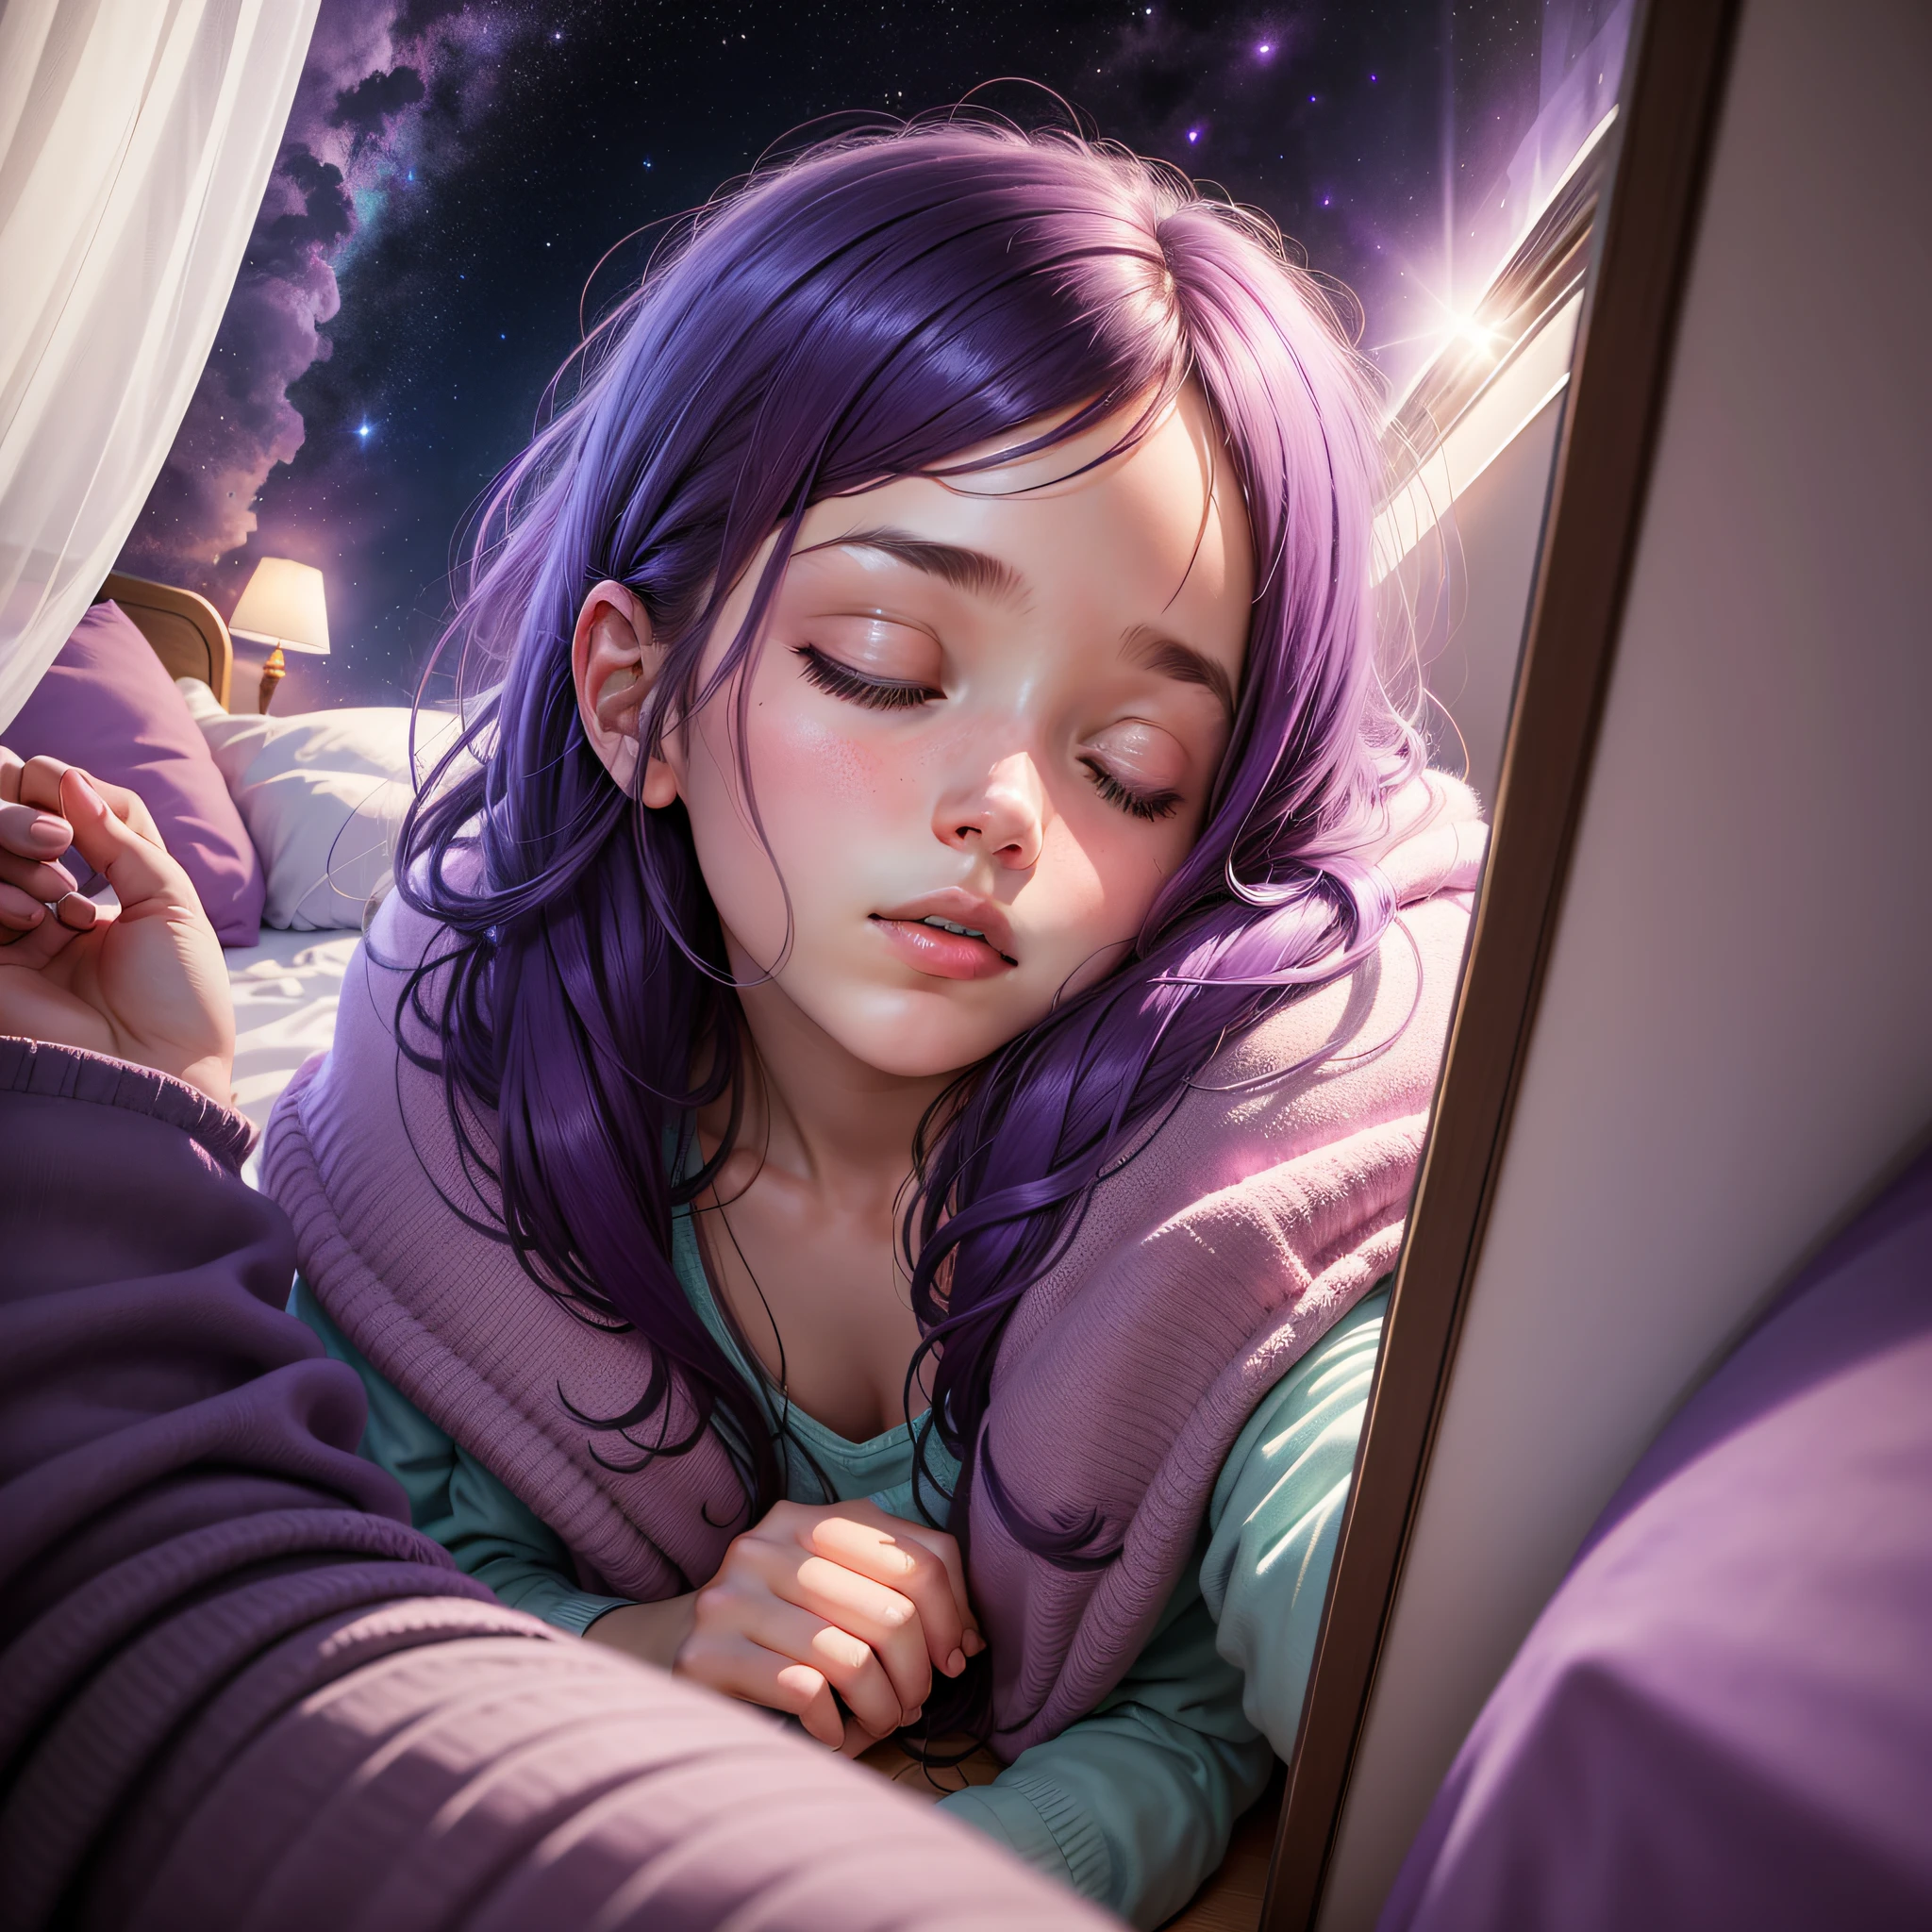 Quarto com 1 menina dormindo e sonhando com uma viagem para uma galáxia violeta